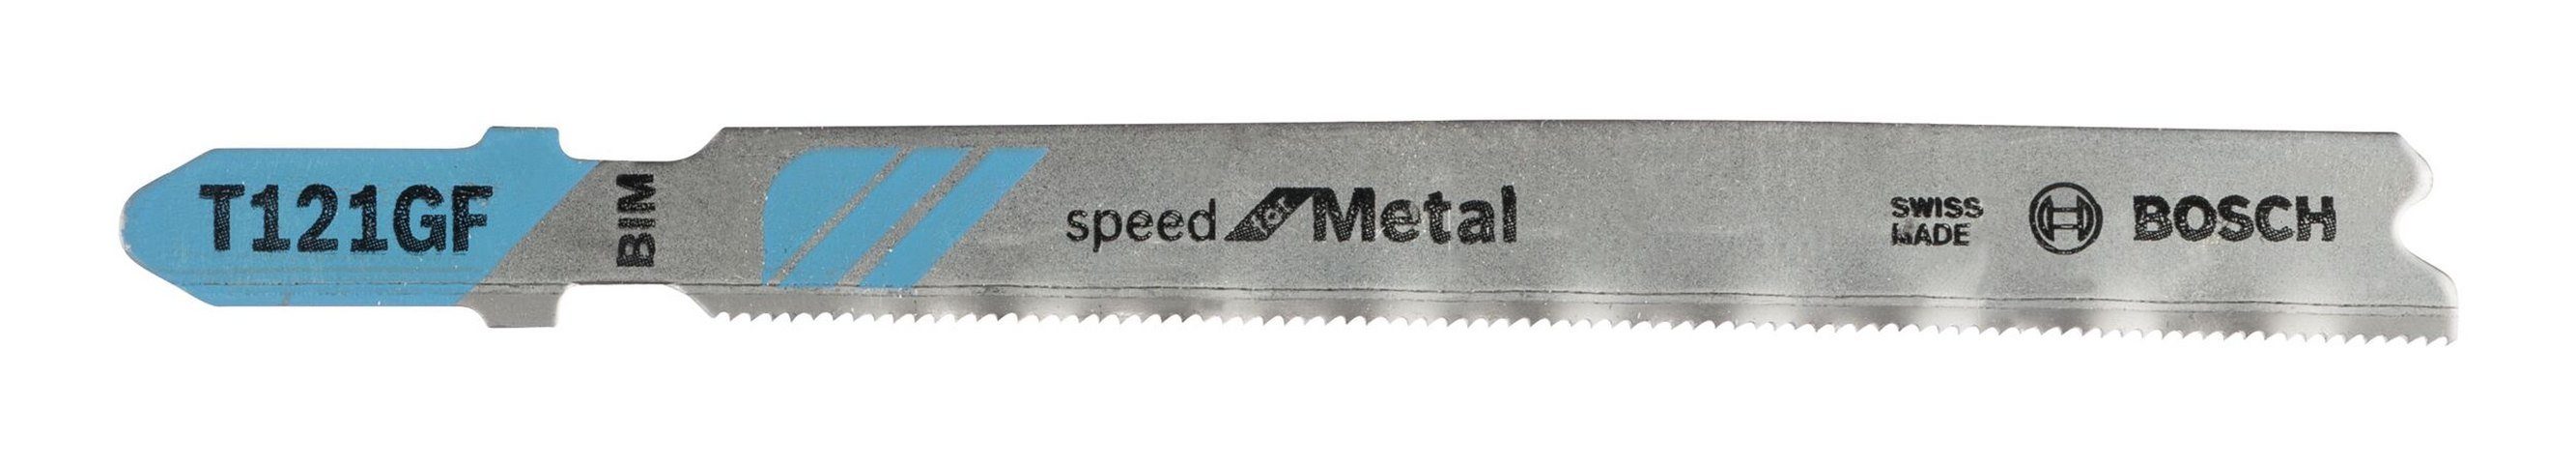 GF 5er-Pack Metal BOSCH (5 Stück), for - Bleche Speed Stichsägeblatt T 121